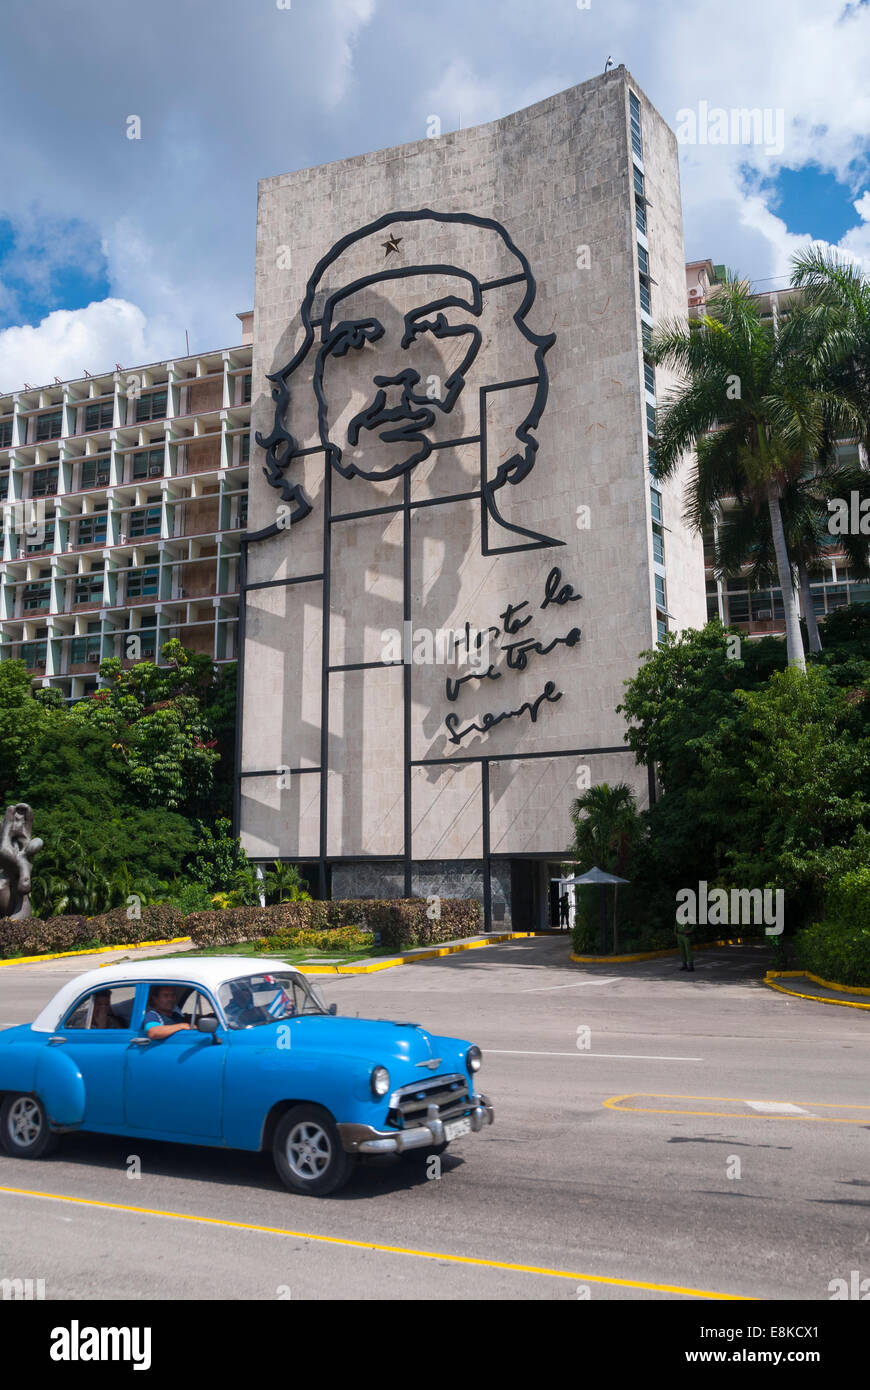 Blick vom Platz des plastischen Bildes von Che Guevara Revolution auf das Ministerium für das innere Gebäude in Havanna Kuba. Stockfoto